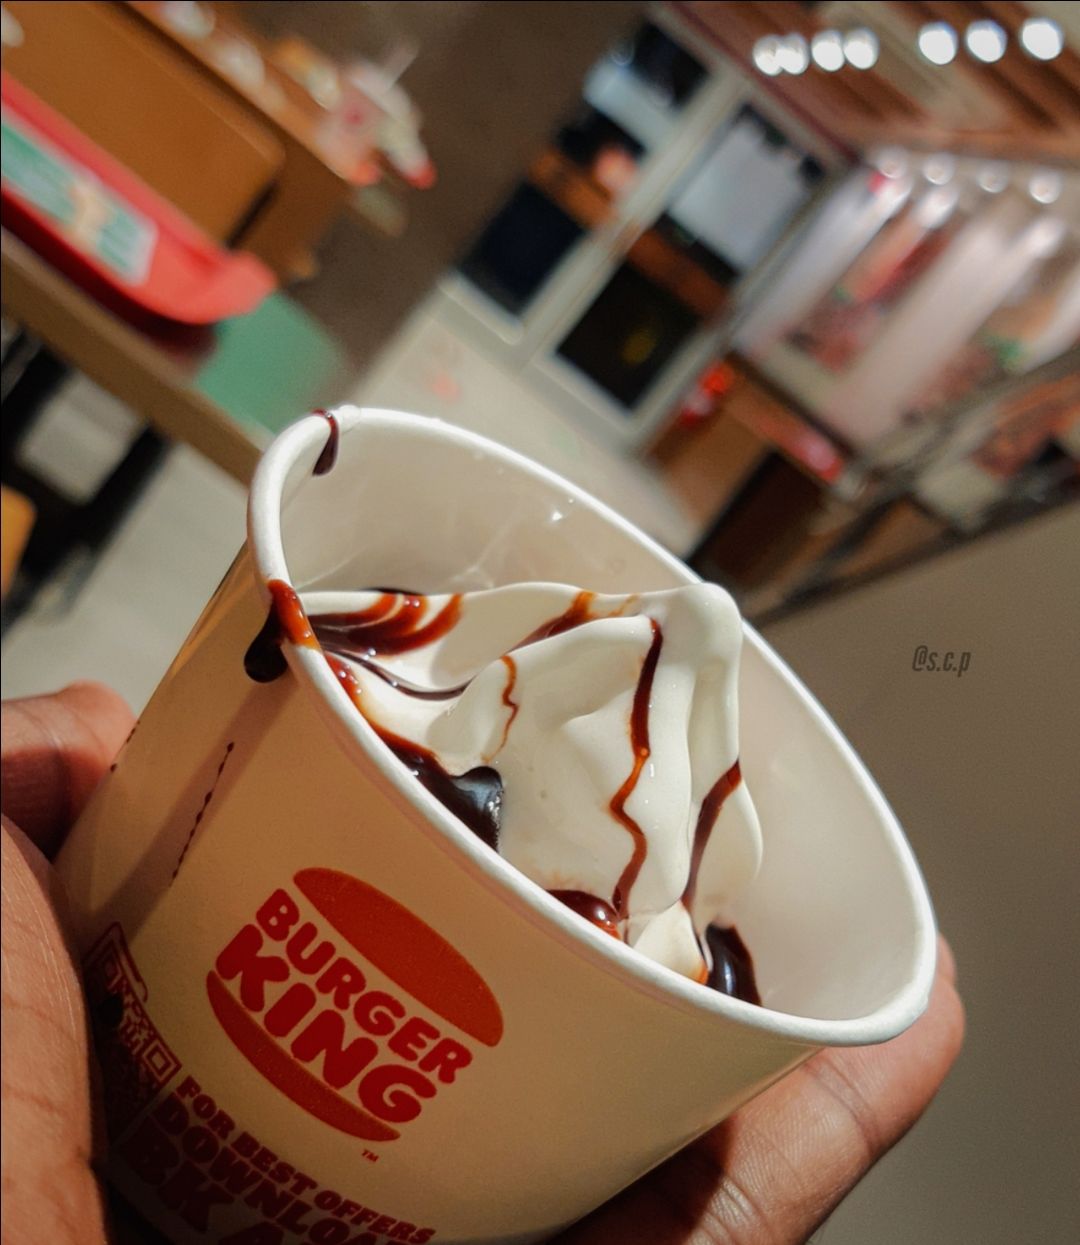 Photo of Burger King By Shyama Charan parsad